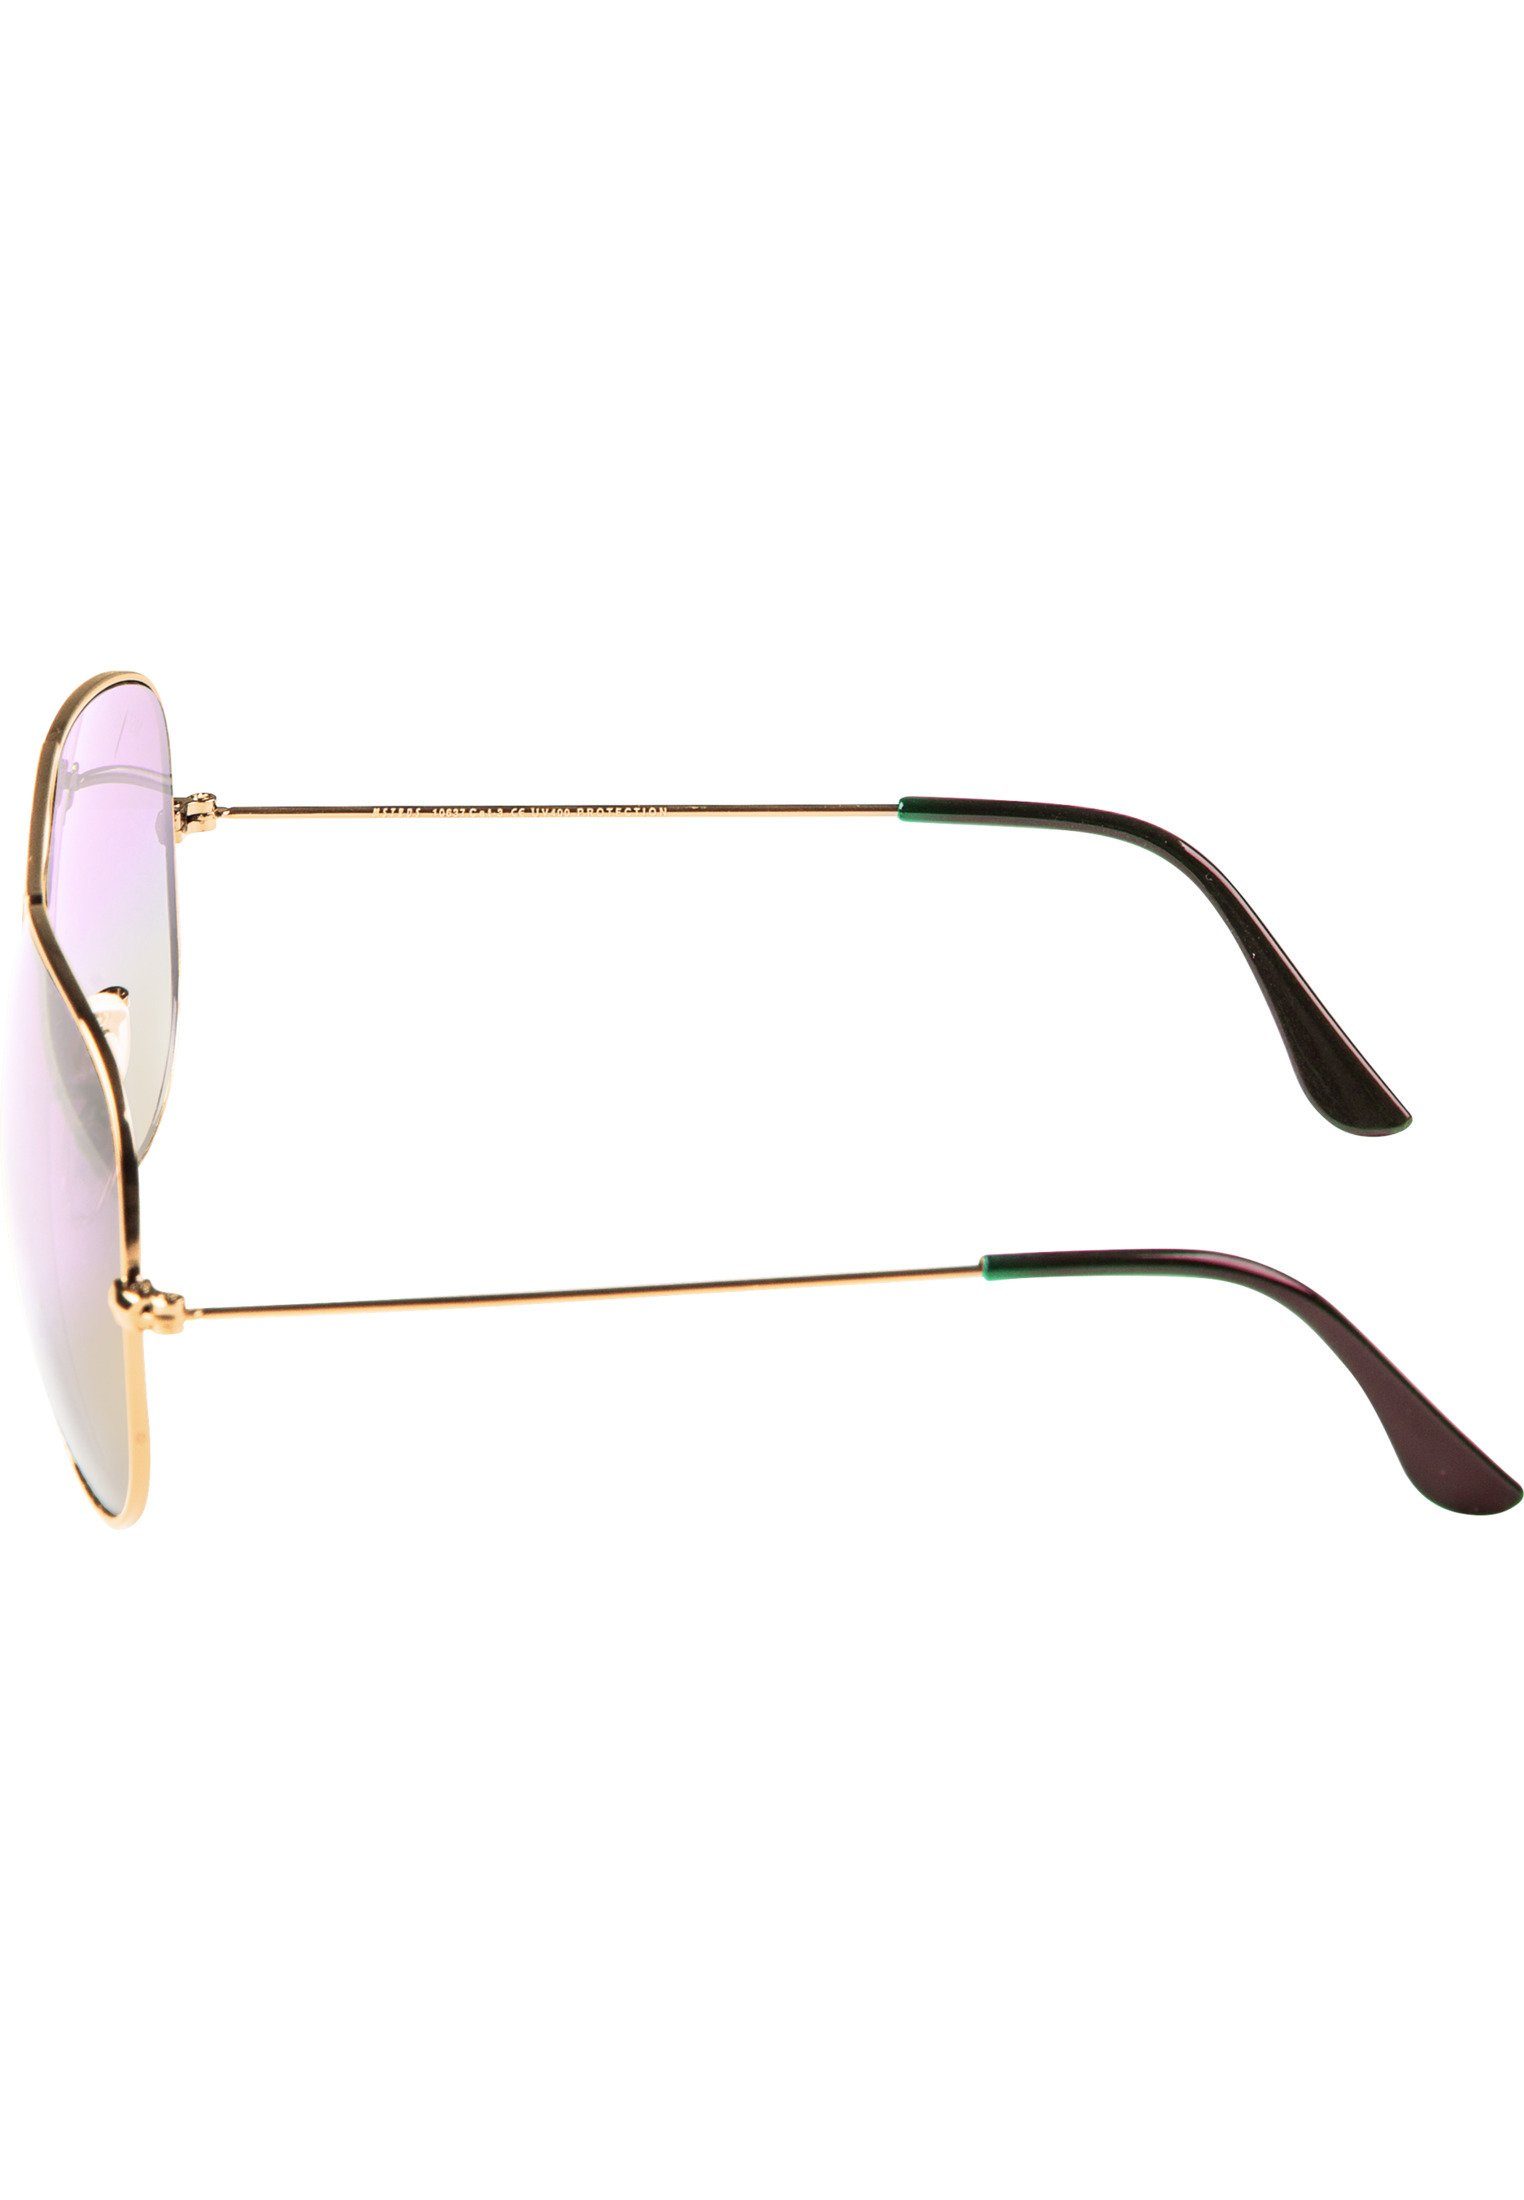 Accessoires PureAv Sonnenbrille MSTRDS gold/rosé Youth Sunglasses